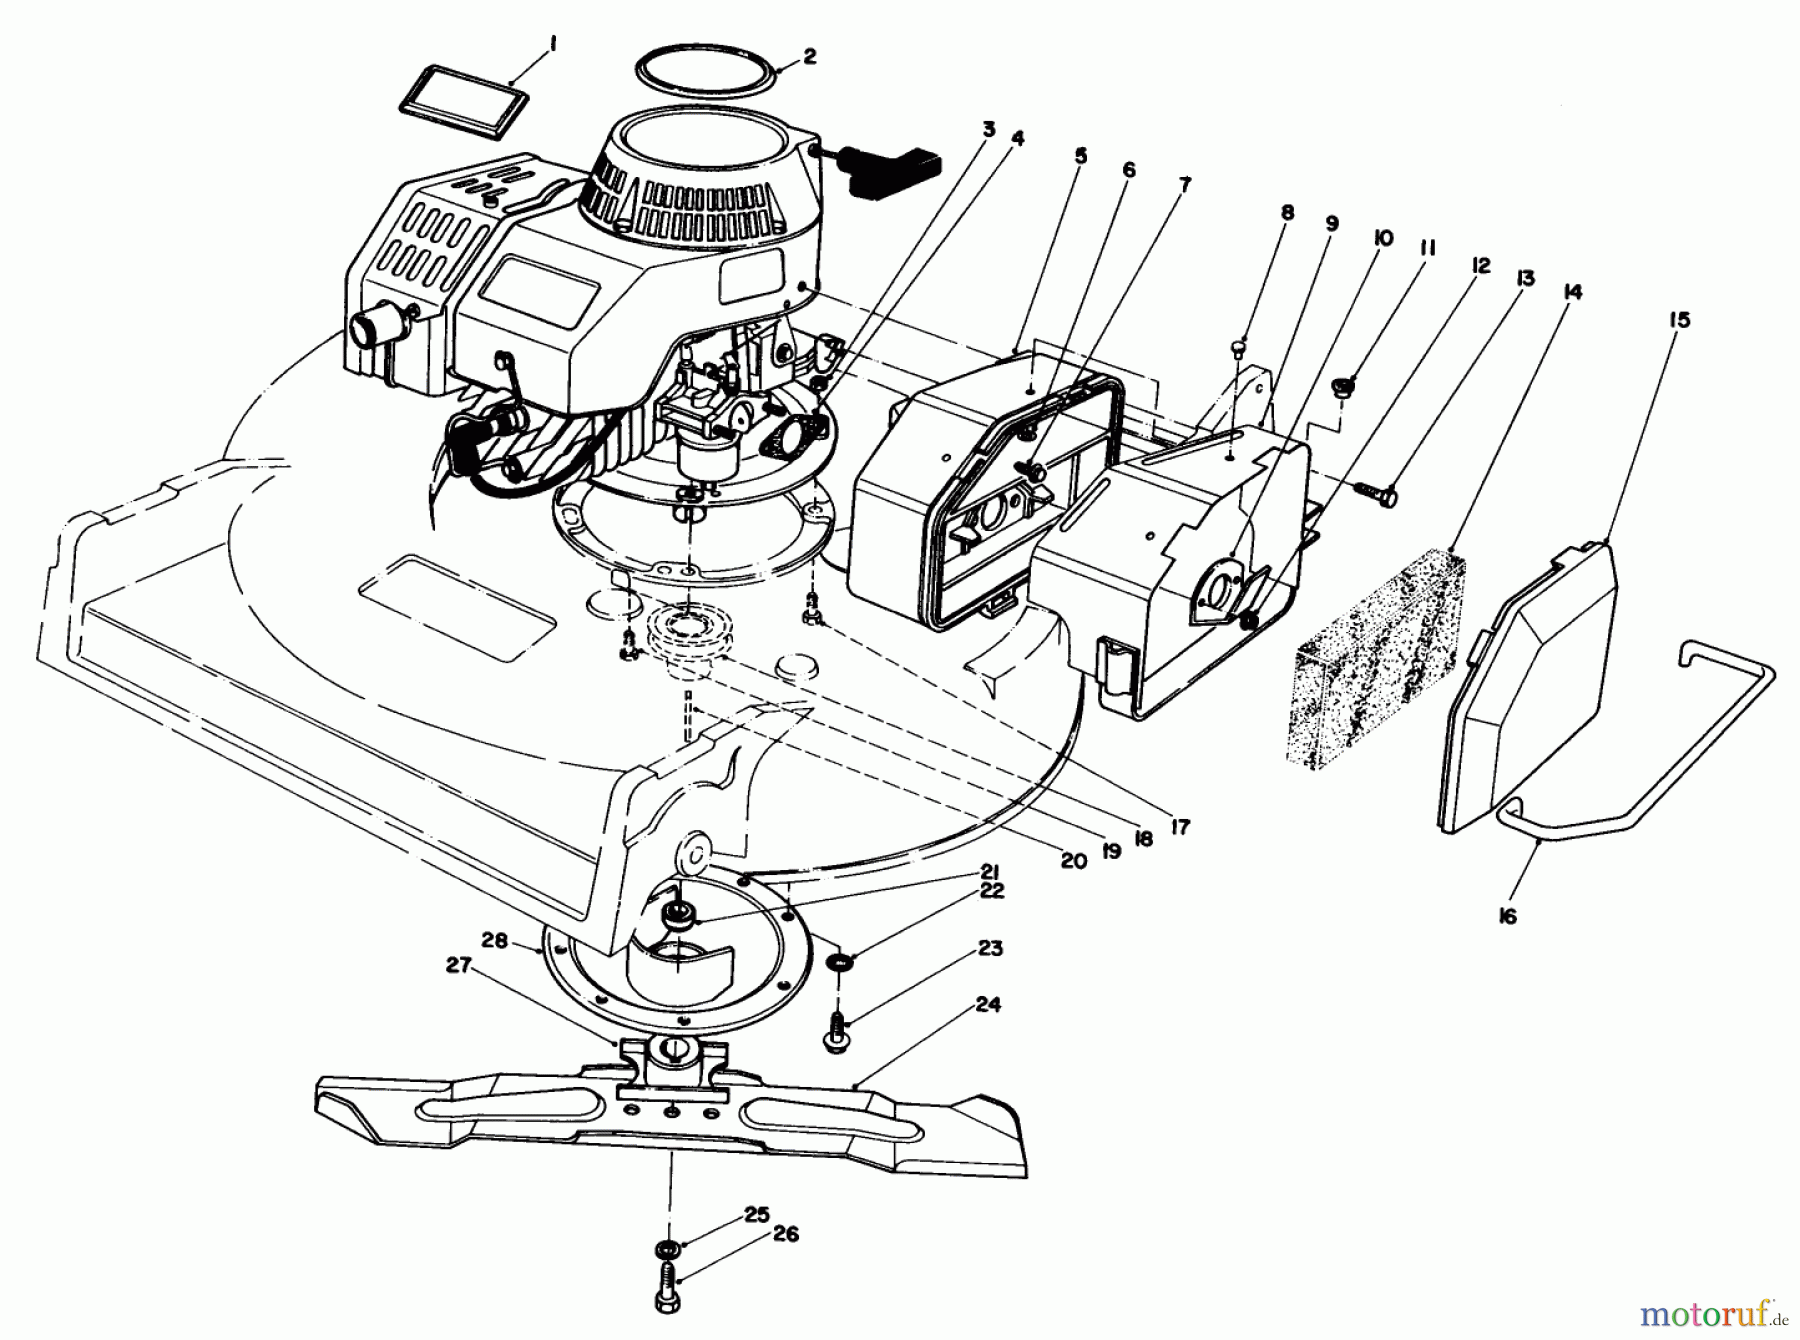  Toro Neu Mowers, Walk-Behind Seite 2 22035 - Toro Lawnmower, 1984 (4000001-4999999) ENGINE ASSEMBLY (MODEL 22035)